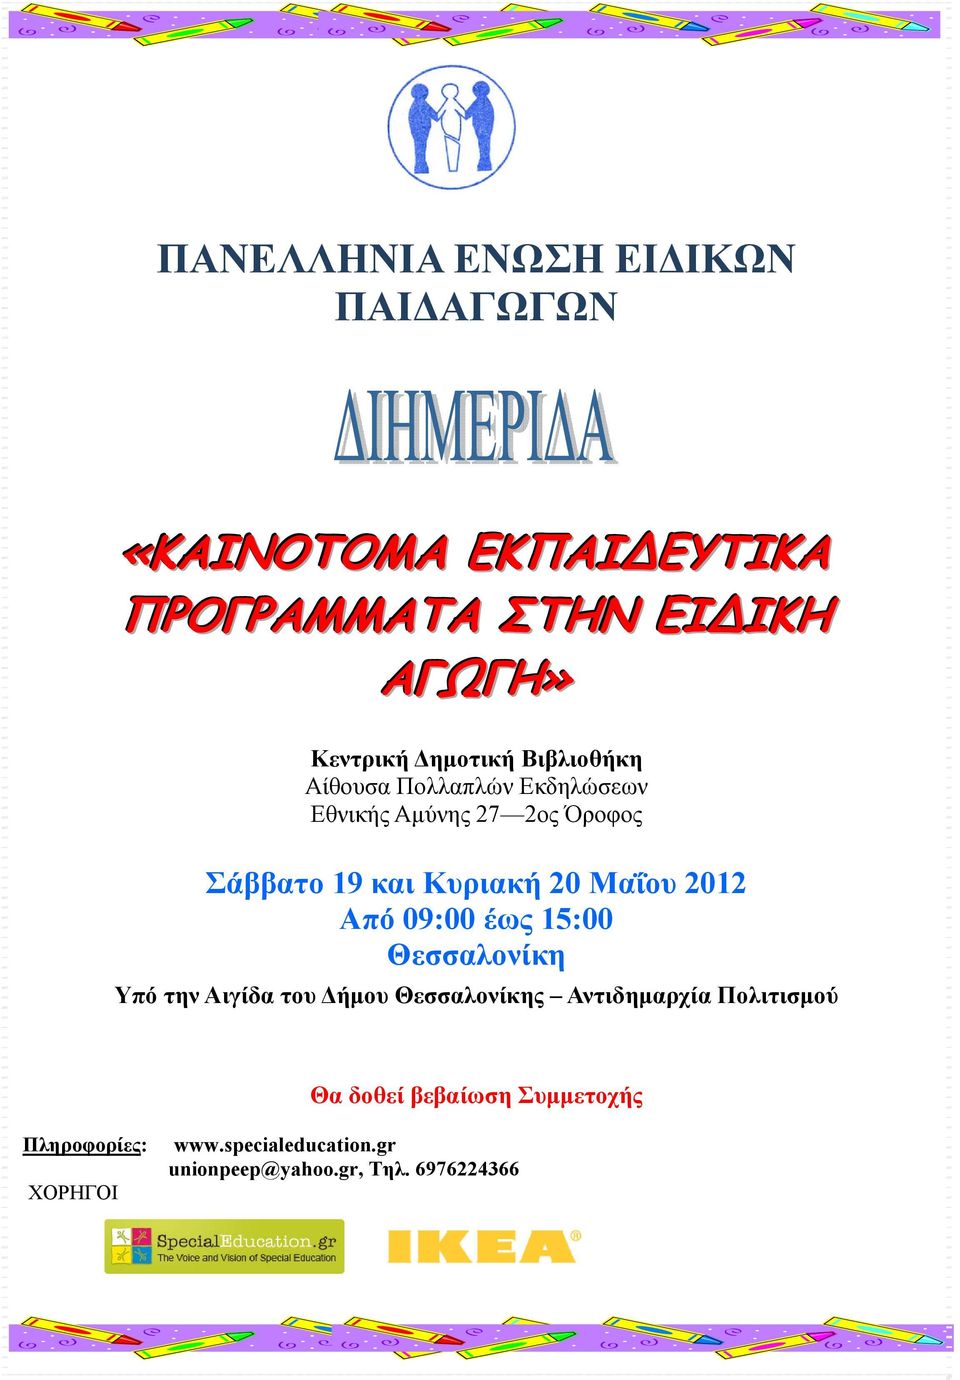 Μαΐου 2012 Από 09:00 έως 15:00 Θεσσαλονίκη Υπό την Αιγίδα του Δήμου Θεσσαλονίκης Αντιδημαρχία Πολιτισμού